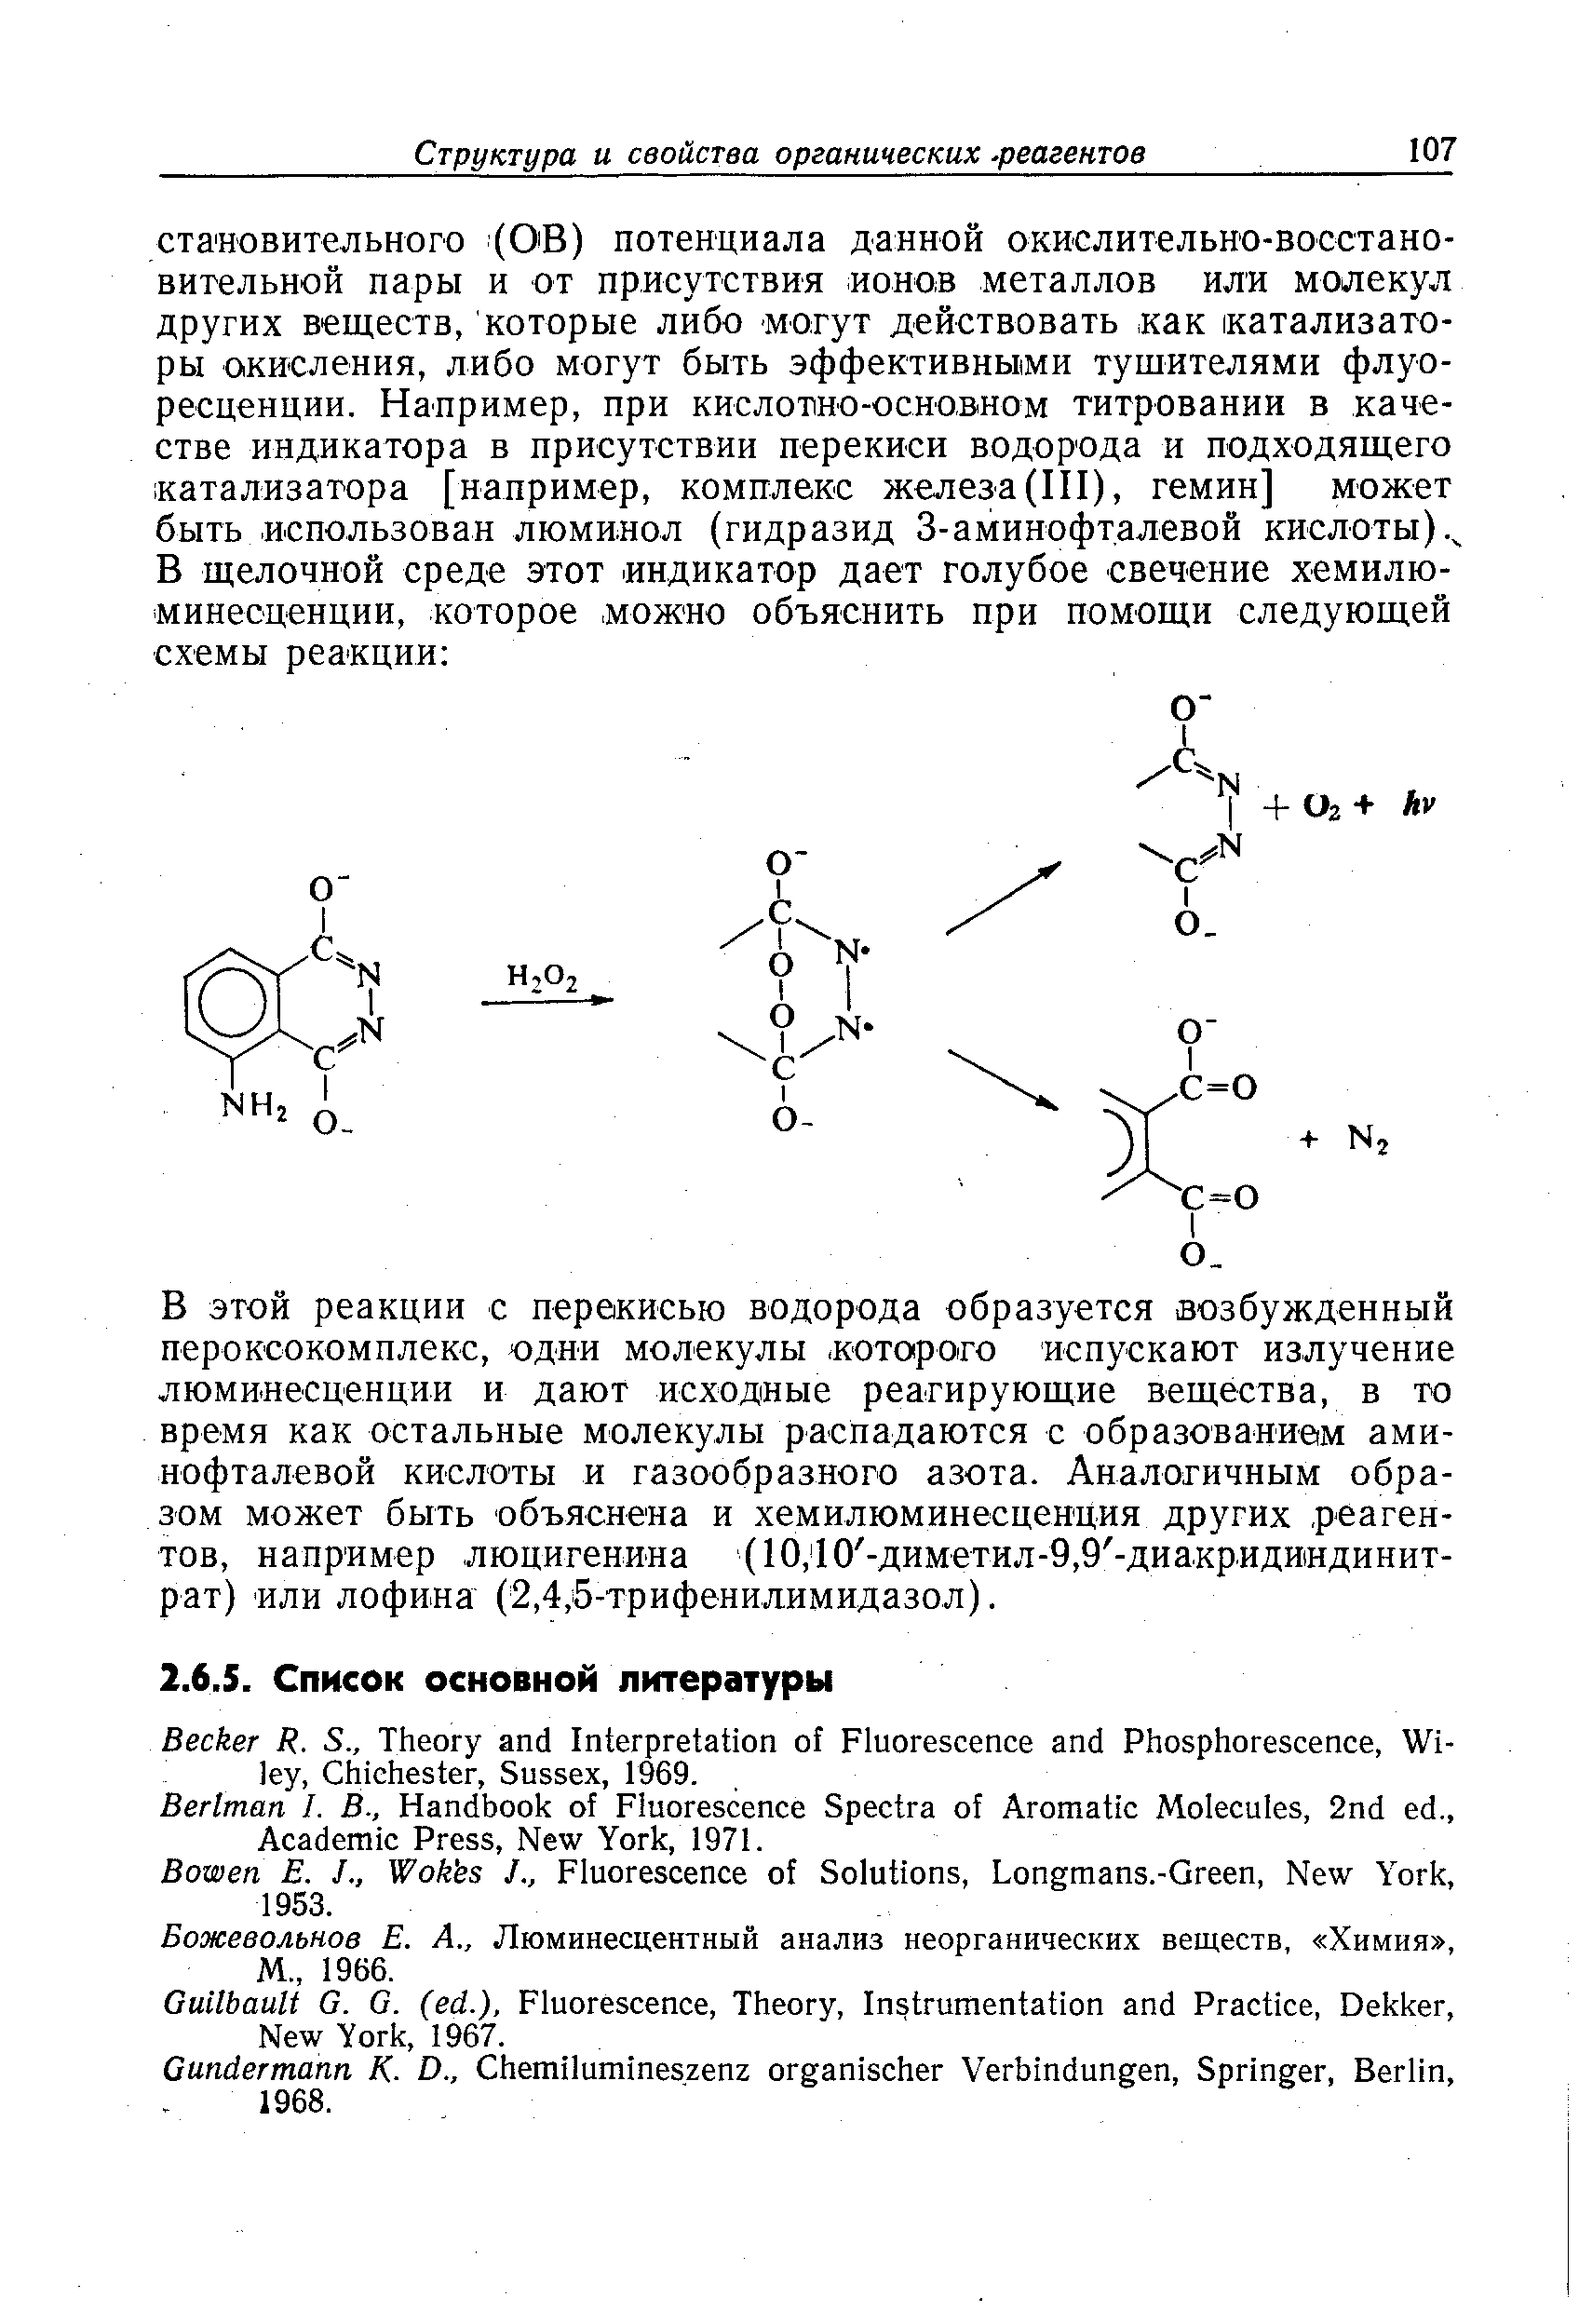 Божевольнов E. A., Люминесцентный анализ неорганических веществ, Химия , М., 1966.